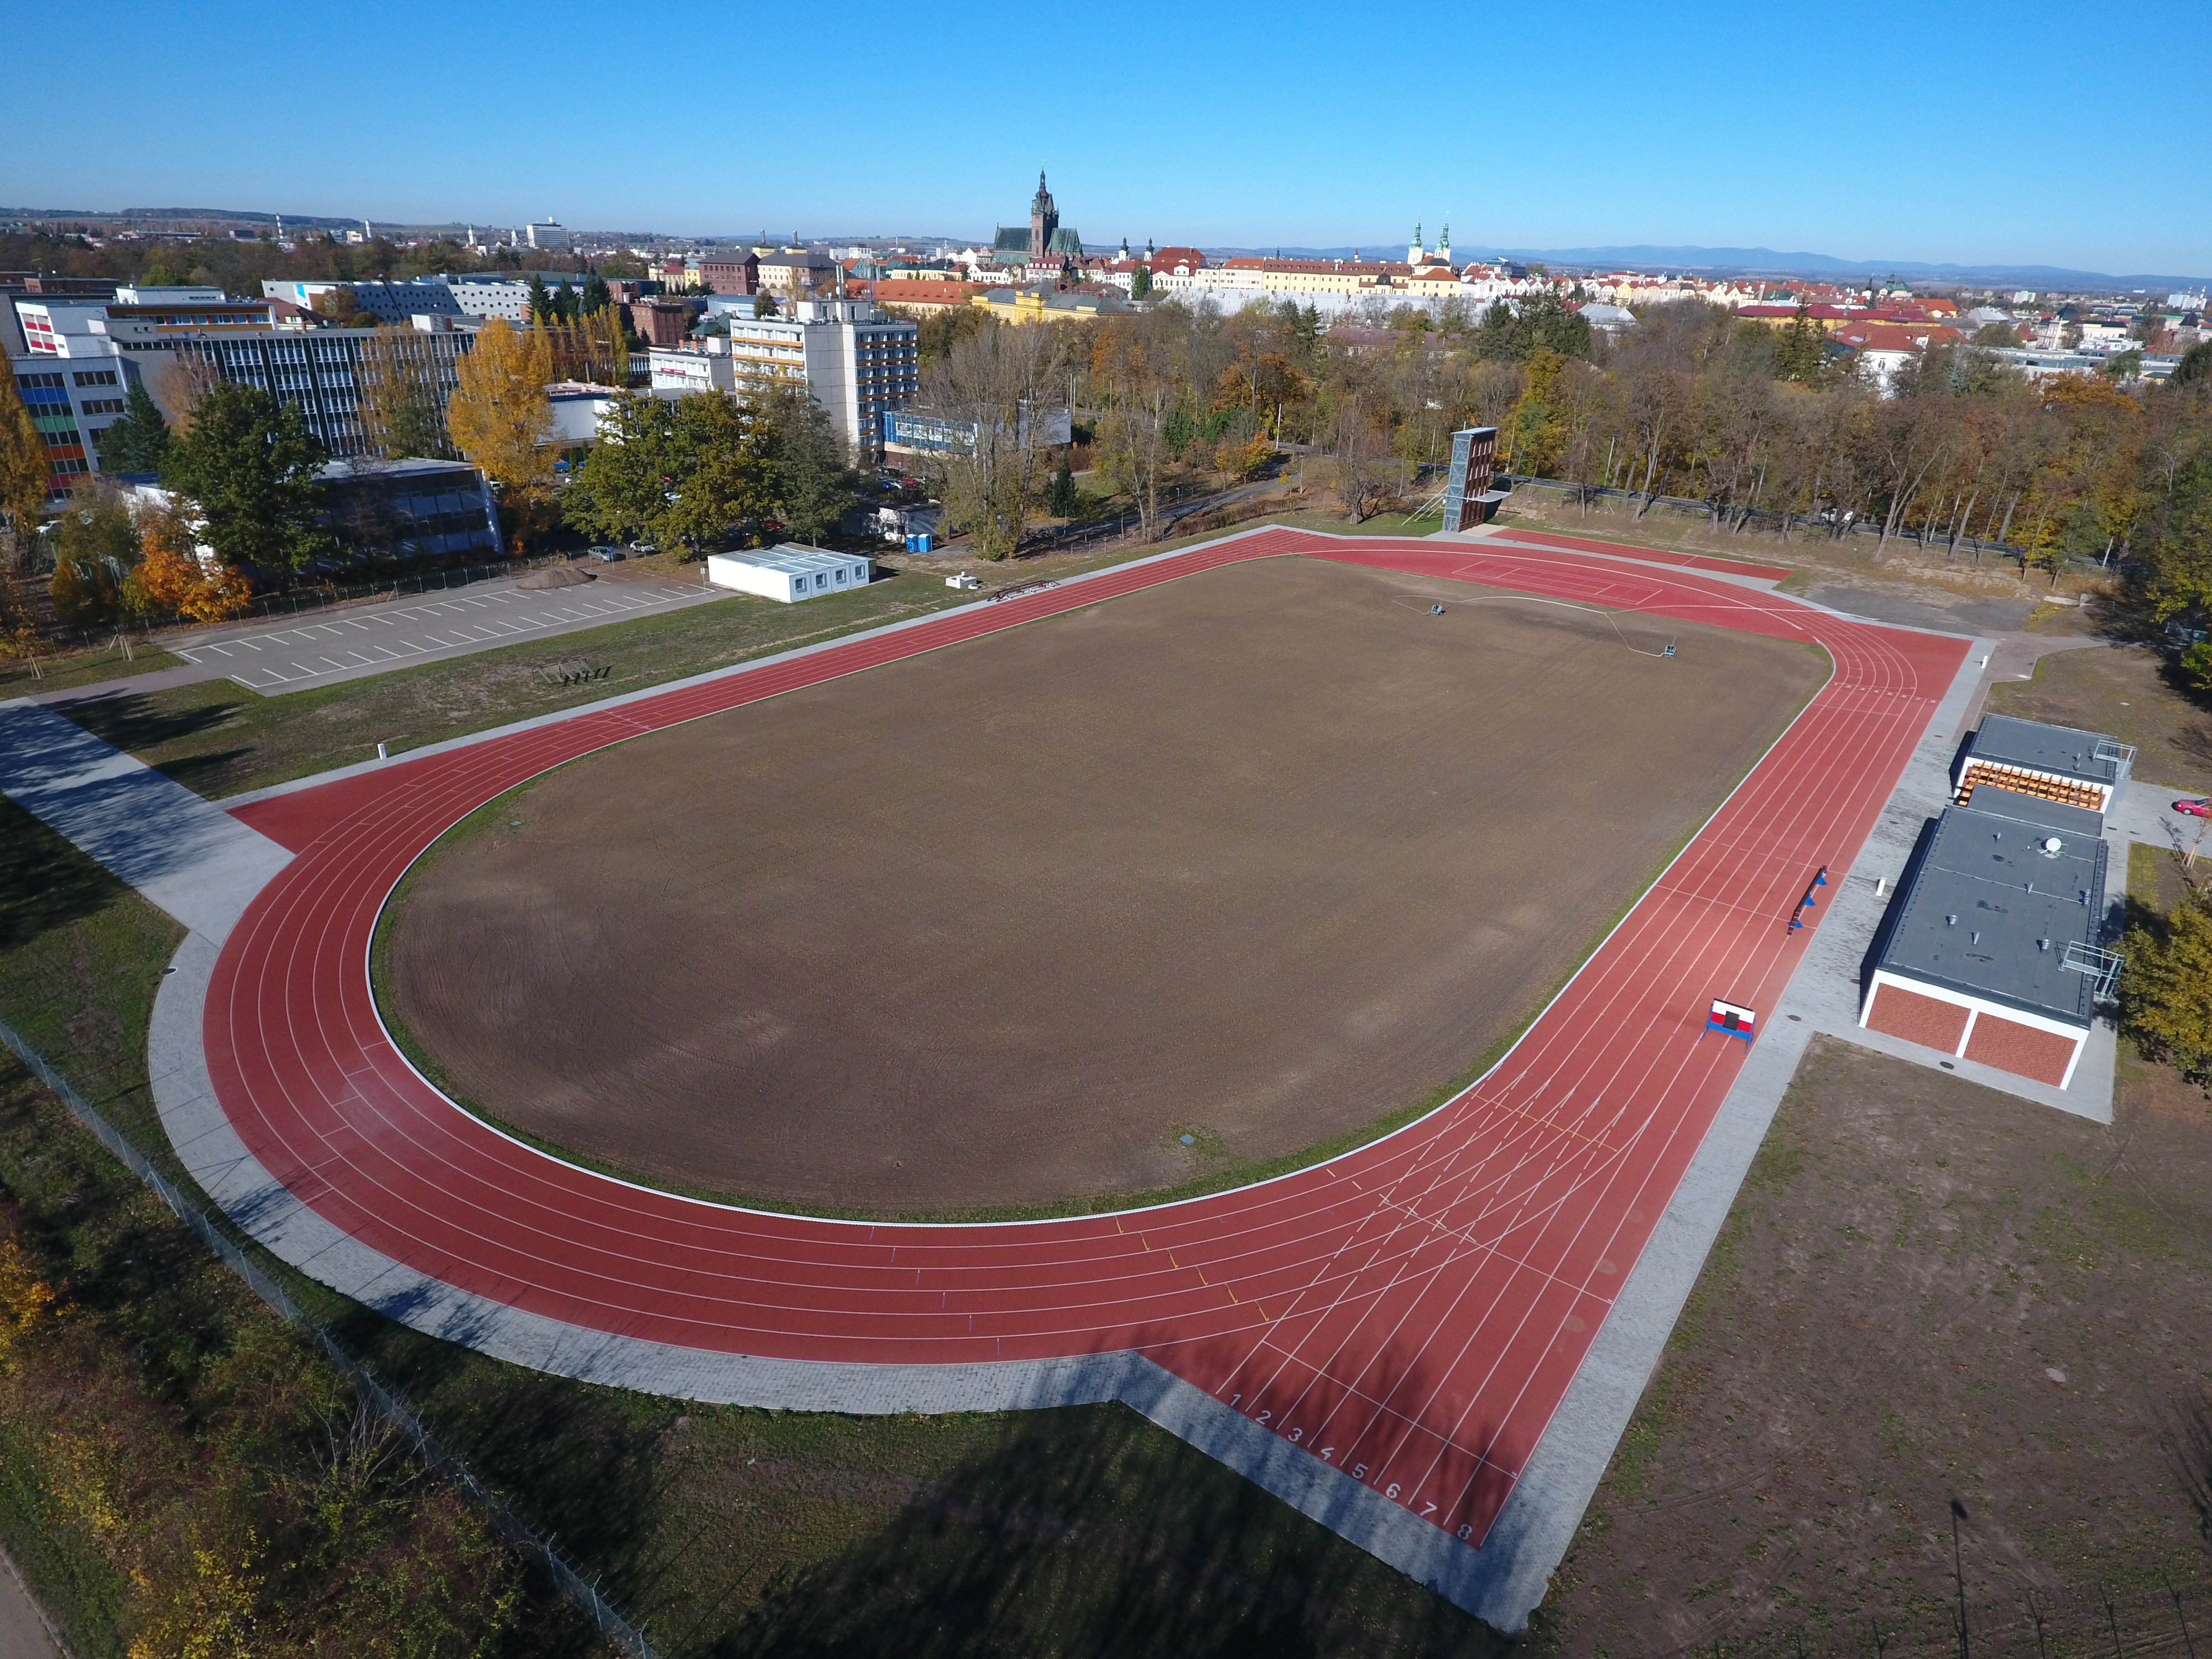 Stadion pro výcvik požárního sportu, Hradec Králové - Special kompetencer